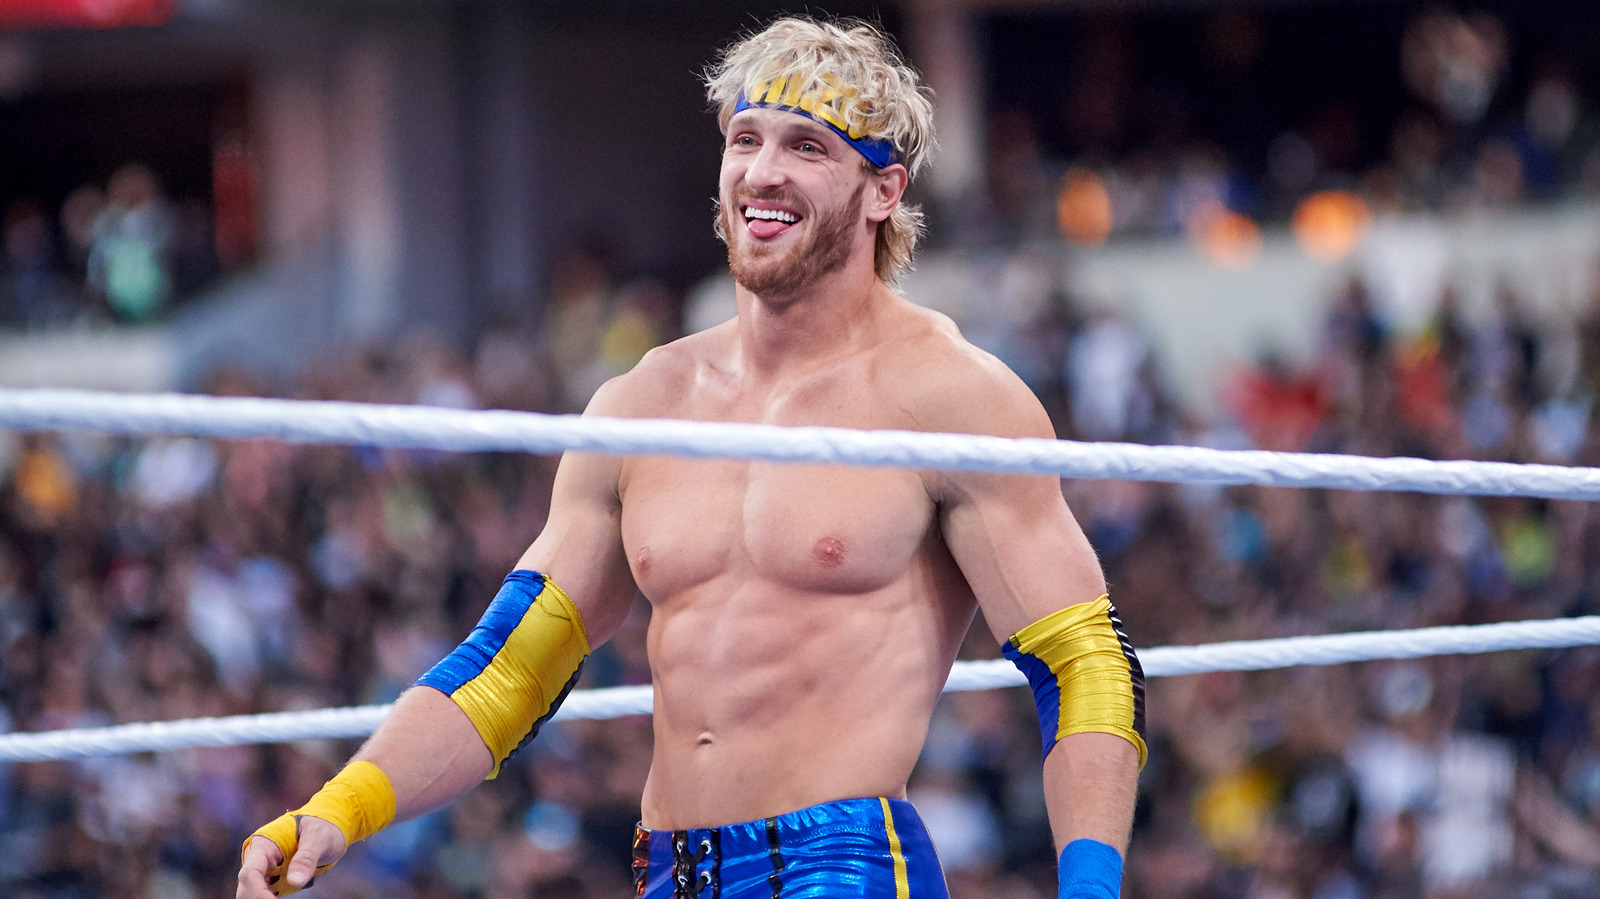 La estrella de la WWE Logan Paul se comprometió